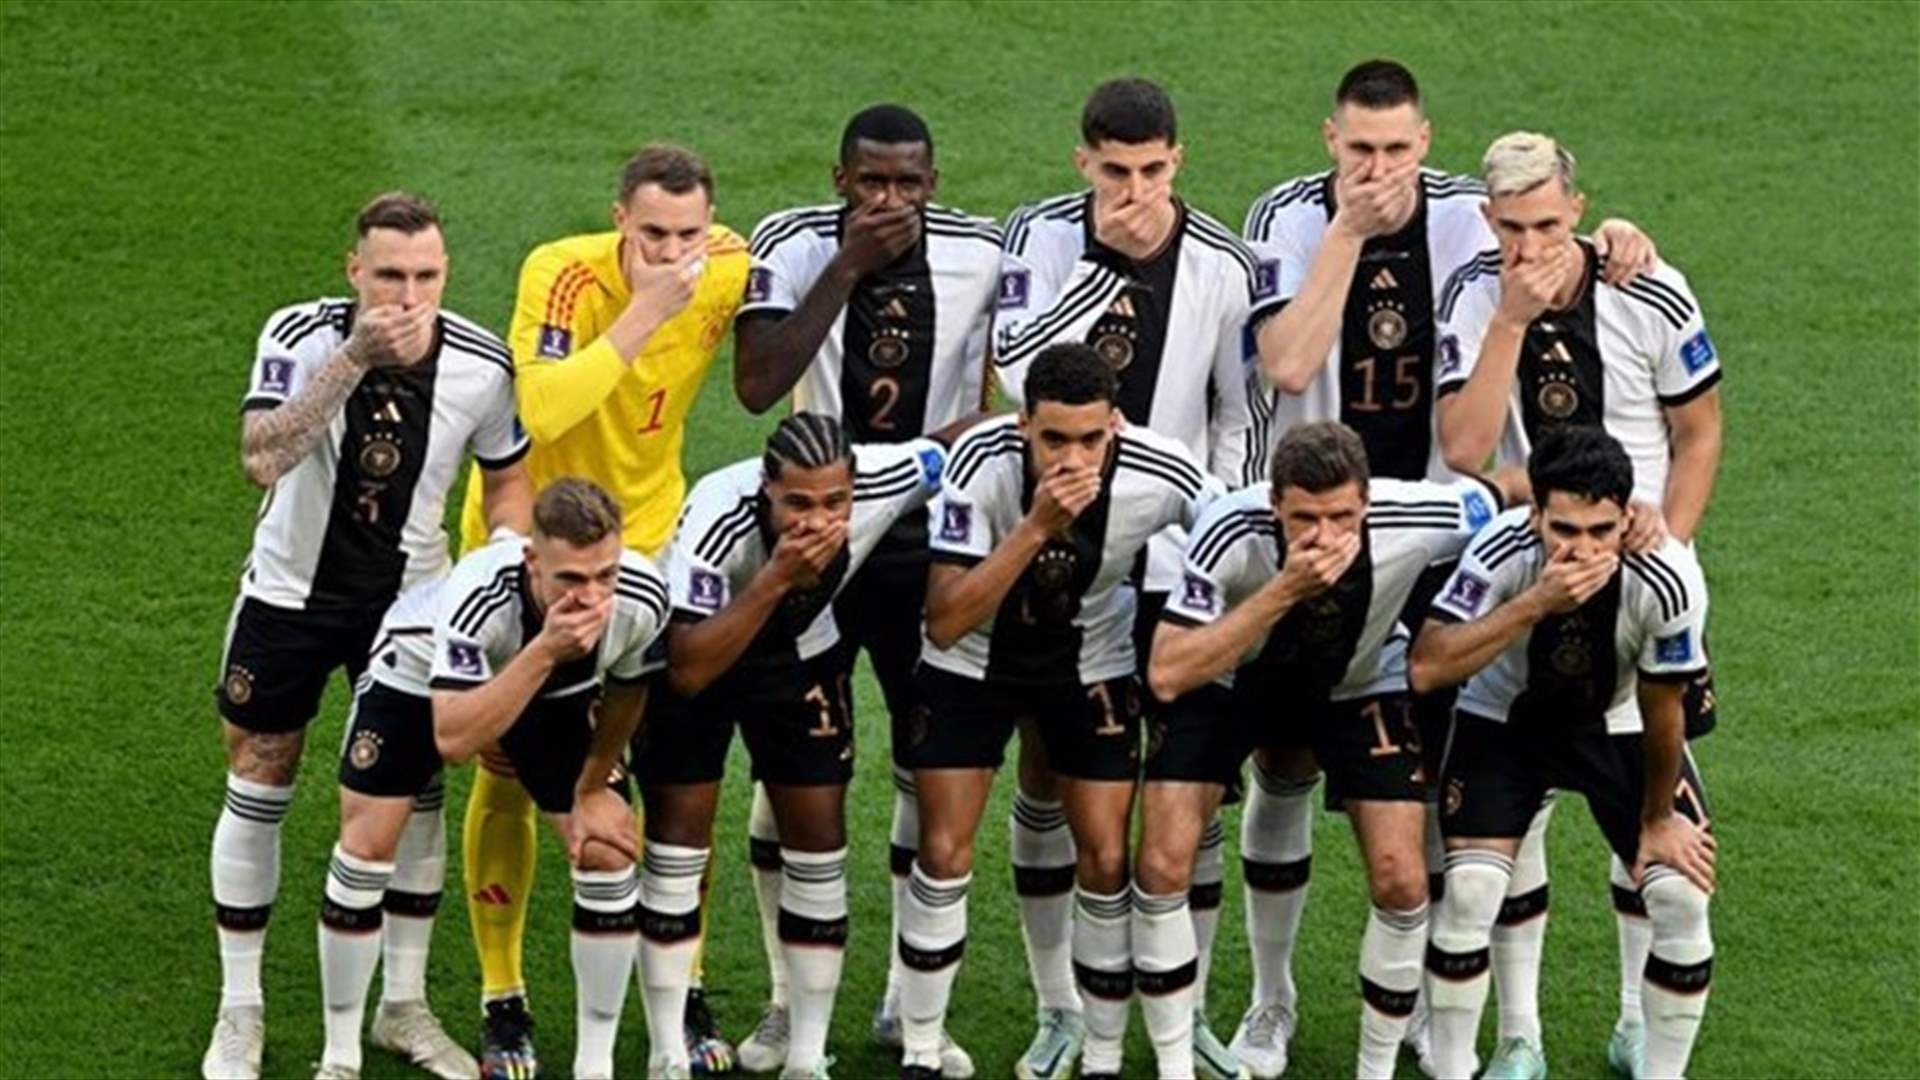 قبل المباراة... لاعبو ألمانيا يكمّون أفواههم احتجاجاً على رفض دعم المثليين